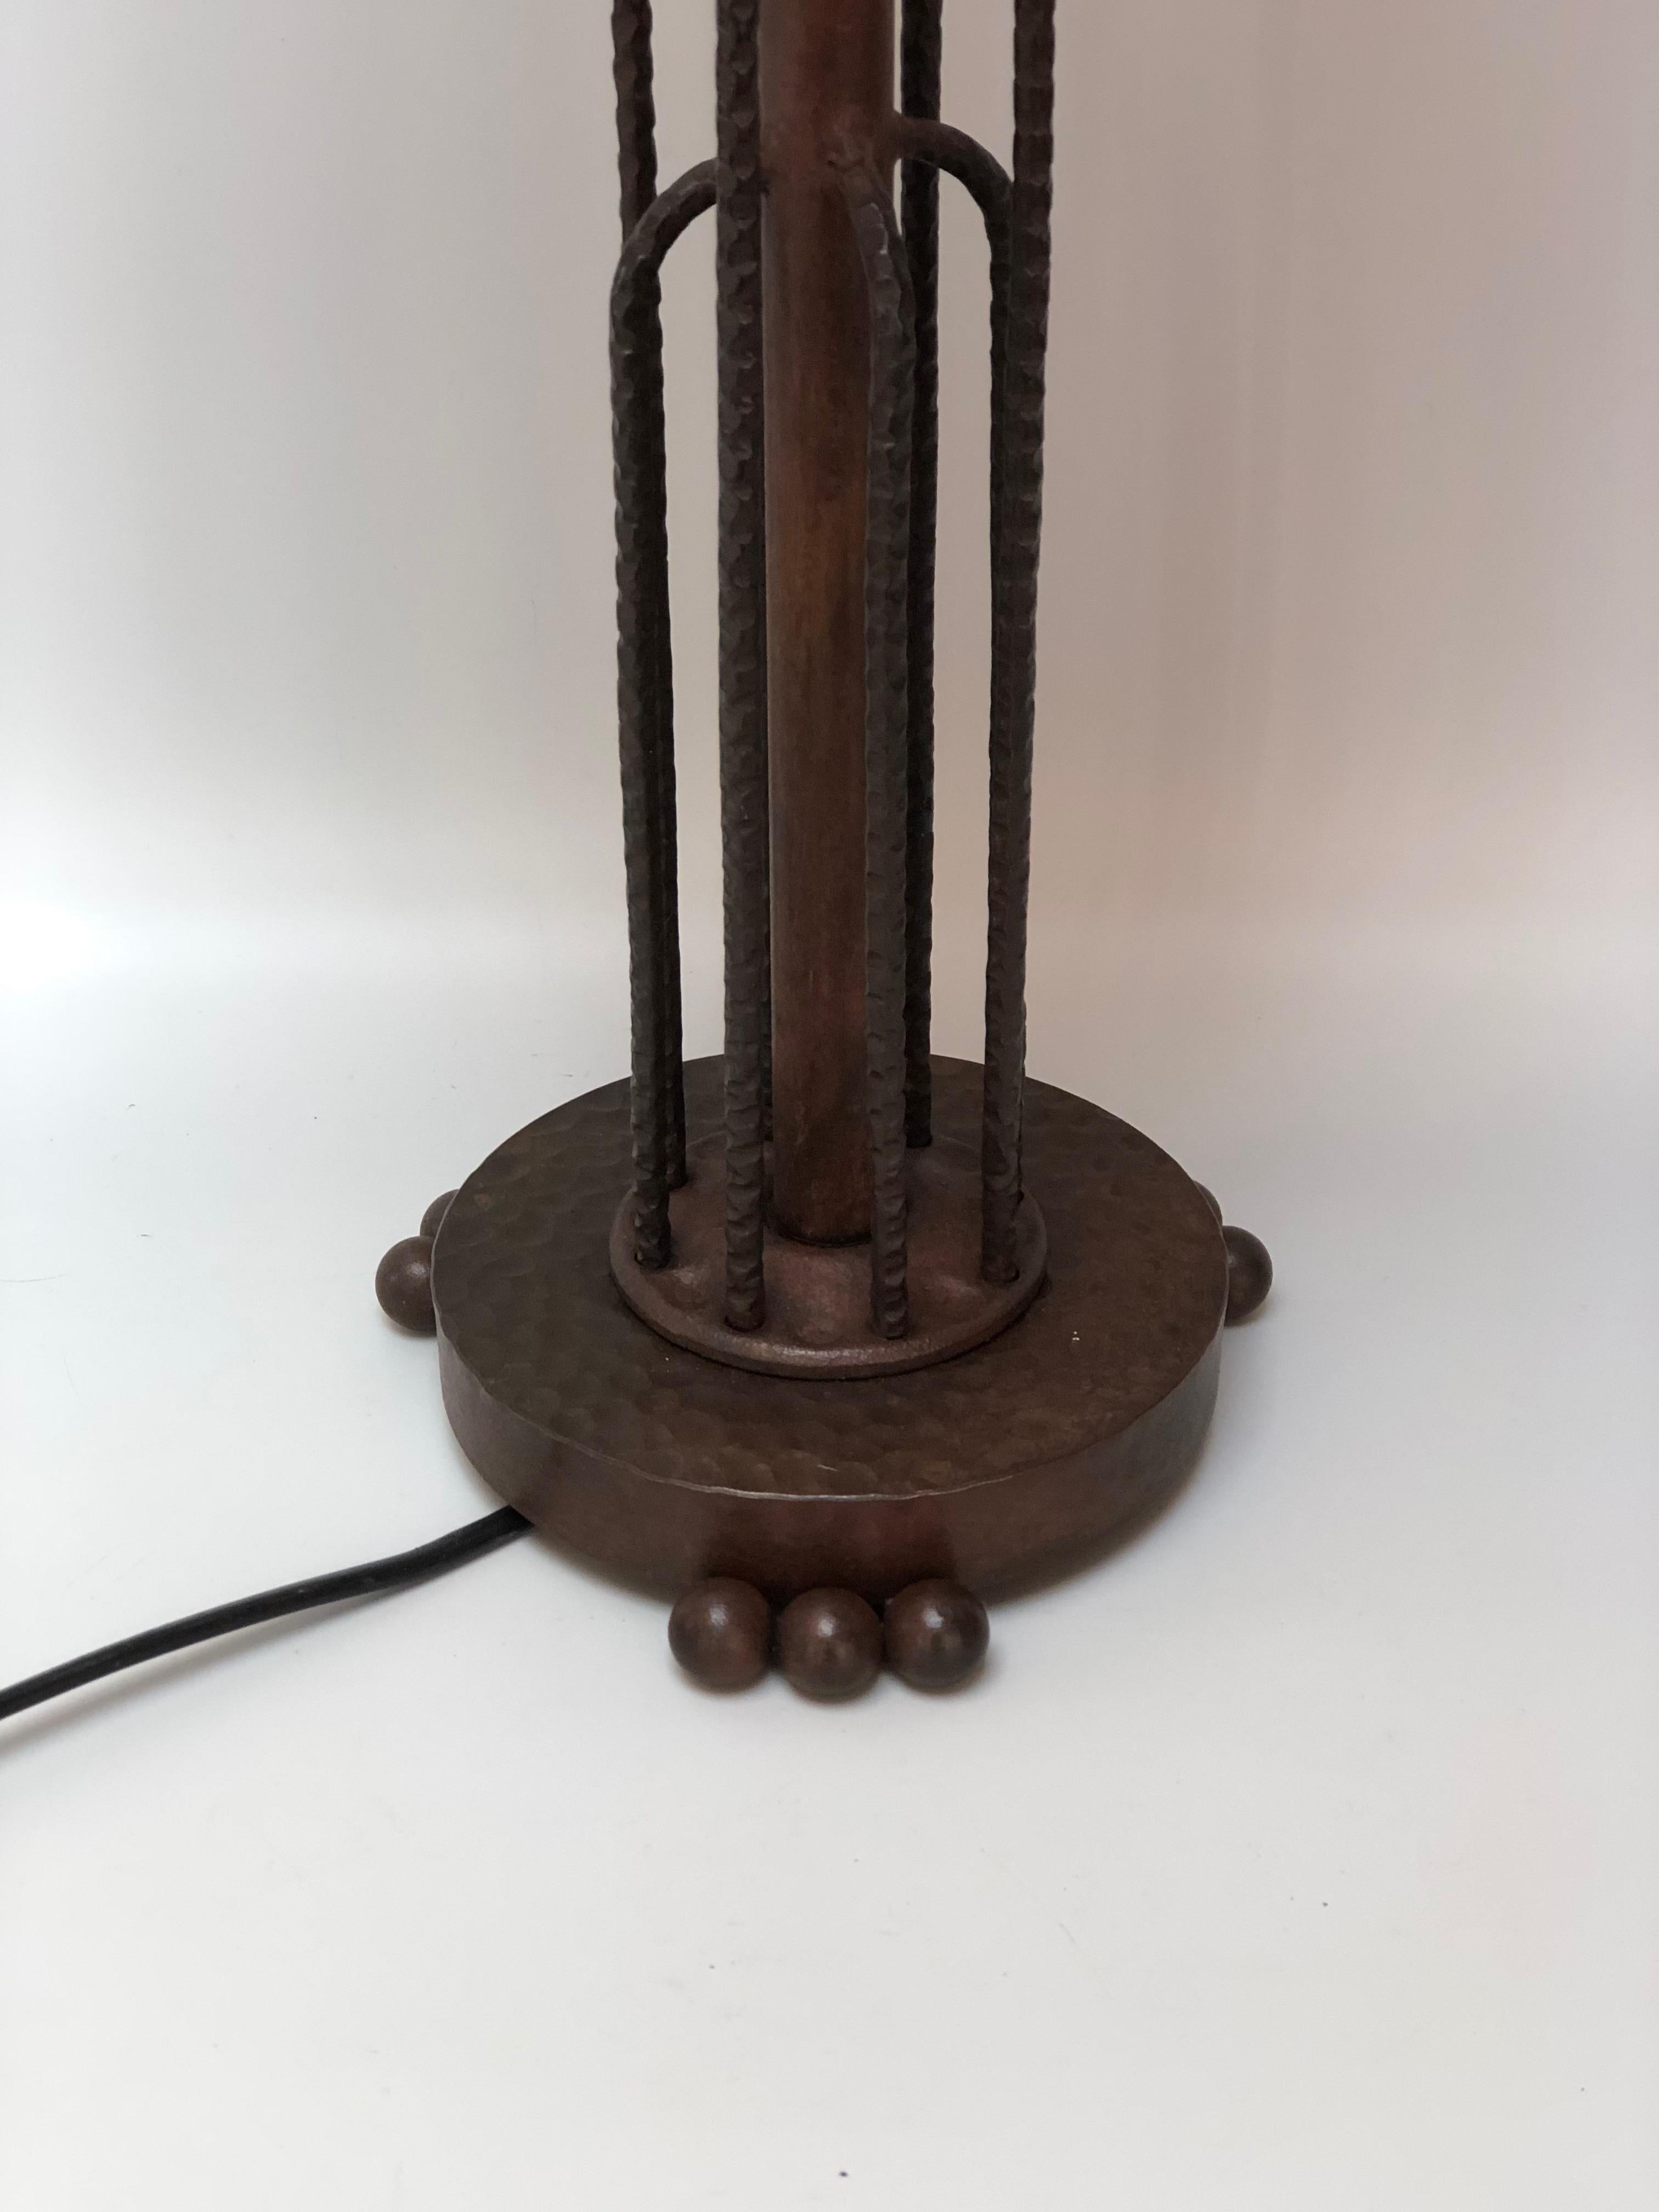 Sabino Paris, lampe art déco circa 1930.
Grand modèle Casacade. Pied en fer forgé, représentant une cascade et verre moulé représentant également une cascade. Signé à l'intérieur de Sabino, numéro de moule 4645.
En parfait état et